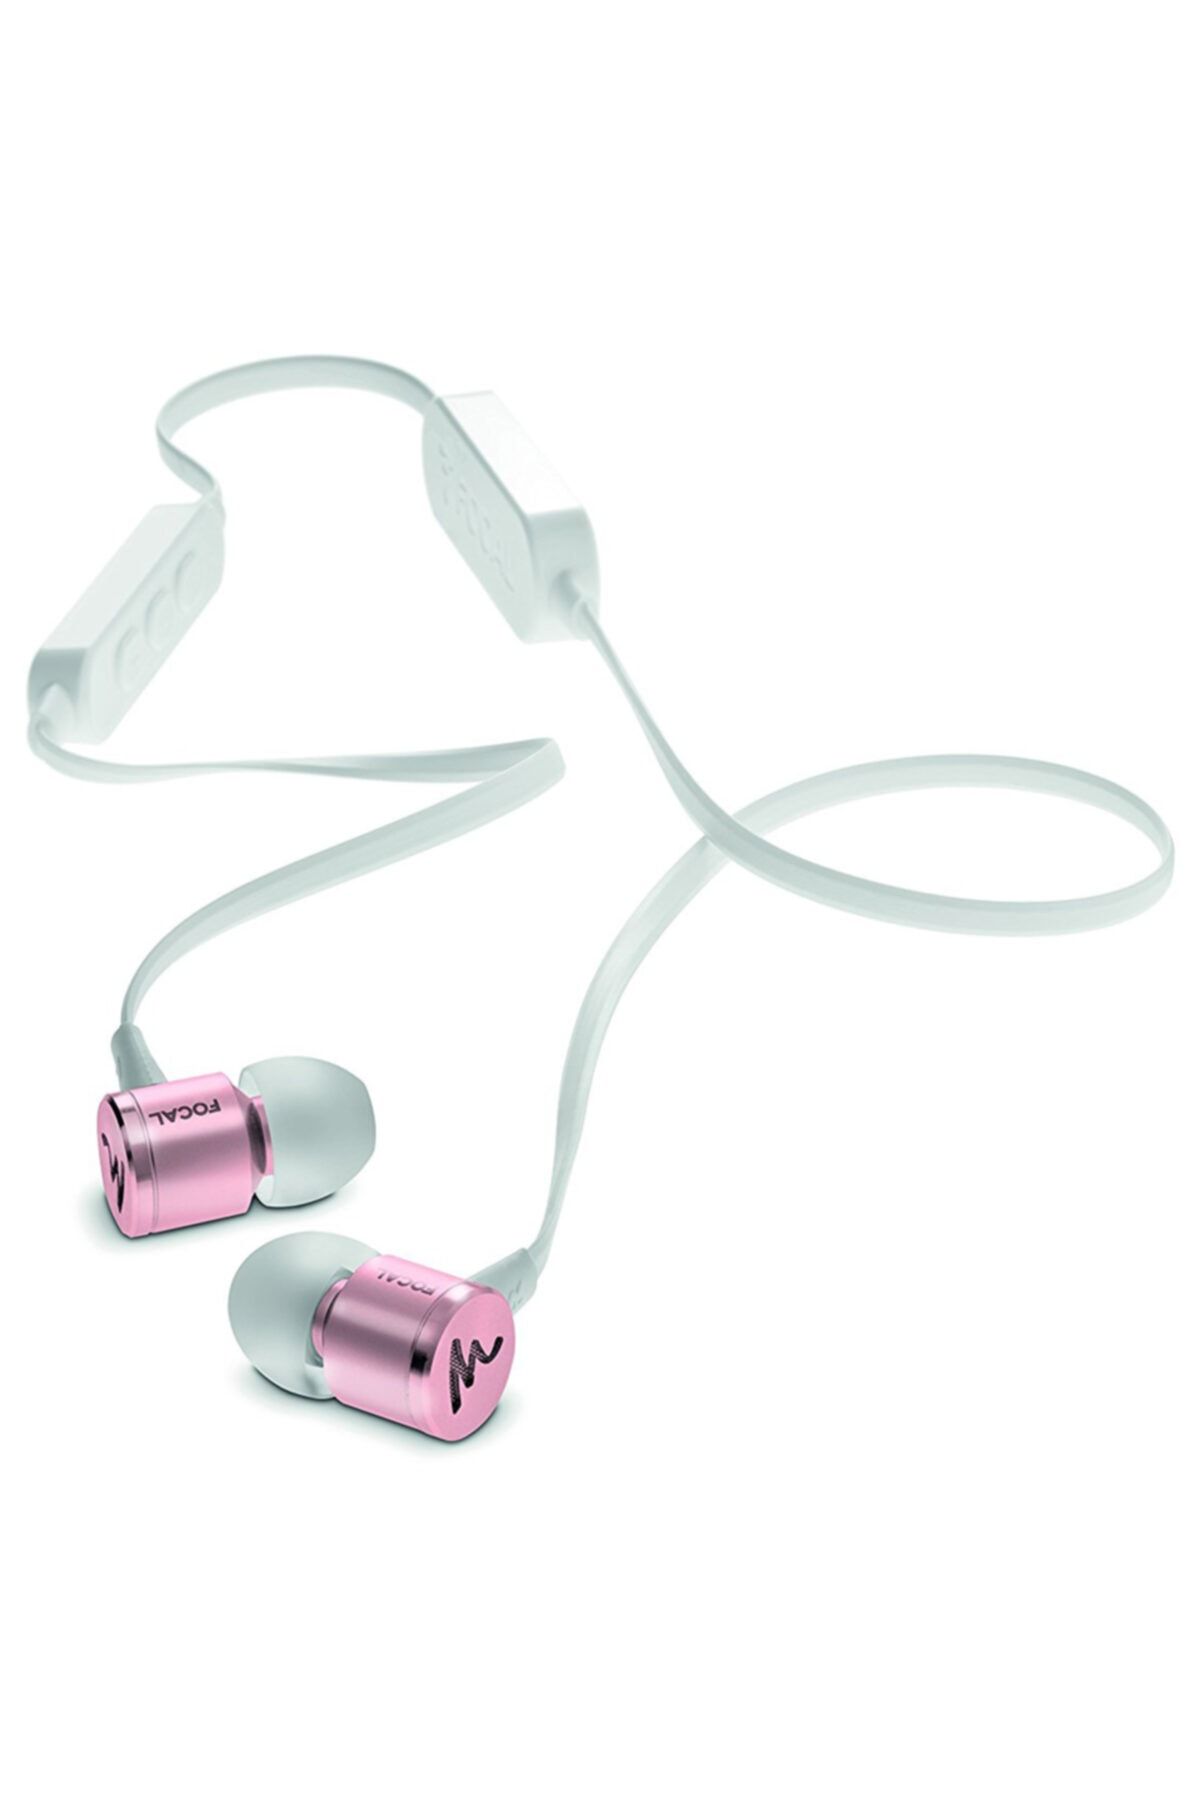 Focal Spark Pembe Bluetooth Kulak İçi Kulaklık